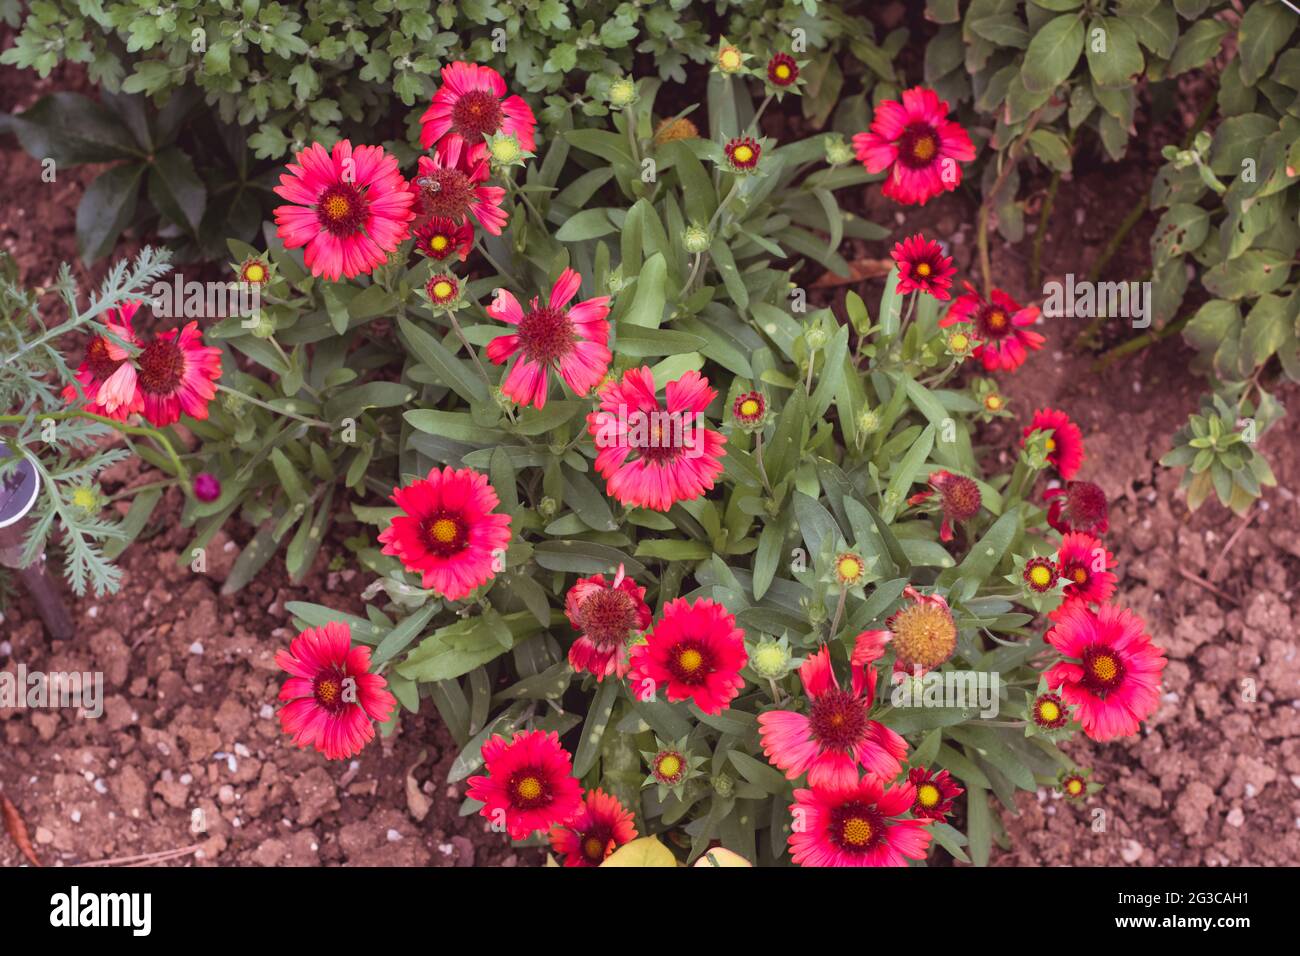 beautiful blooming red gaillardia flowers background Stock Photo